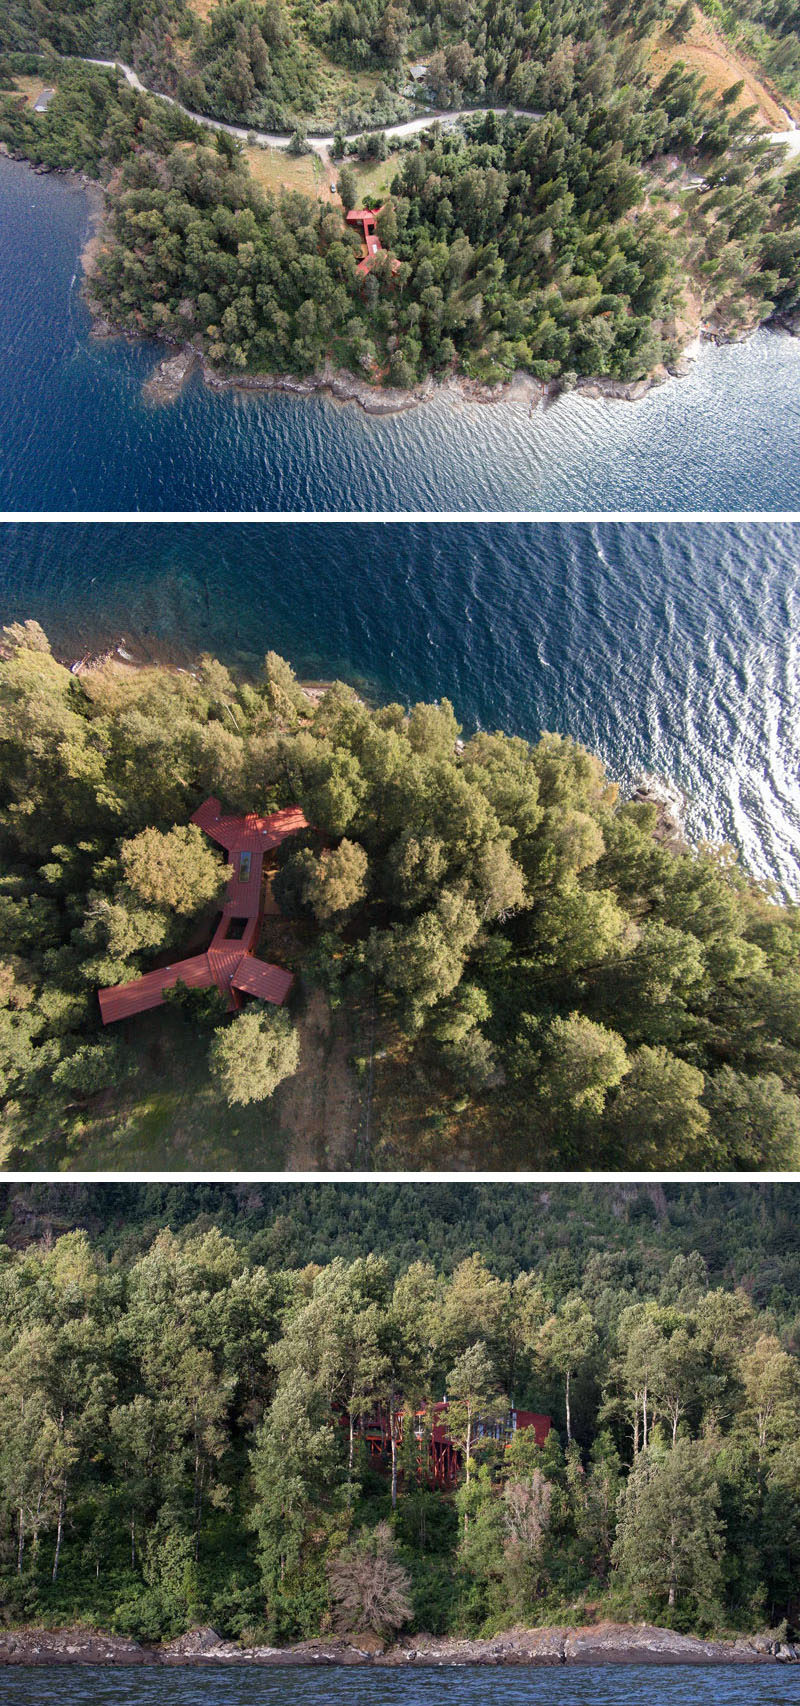 Себастьян Ираррасаваль спроектировал дом в Чили, который спускается вниз по склону холма, чтобы в полной мере насладиться видом на воду, не беспокоя окружающие деревья.